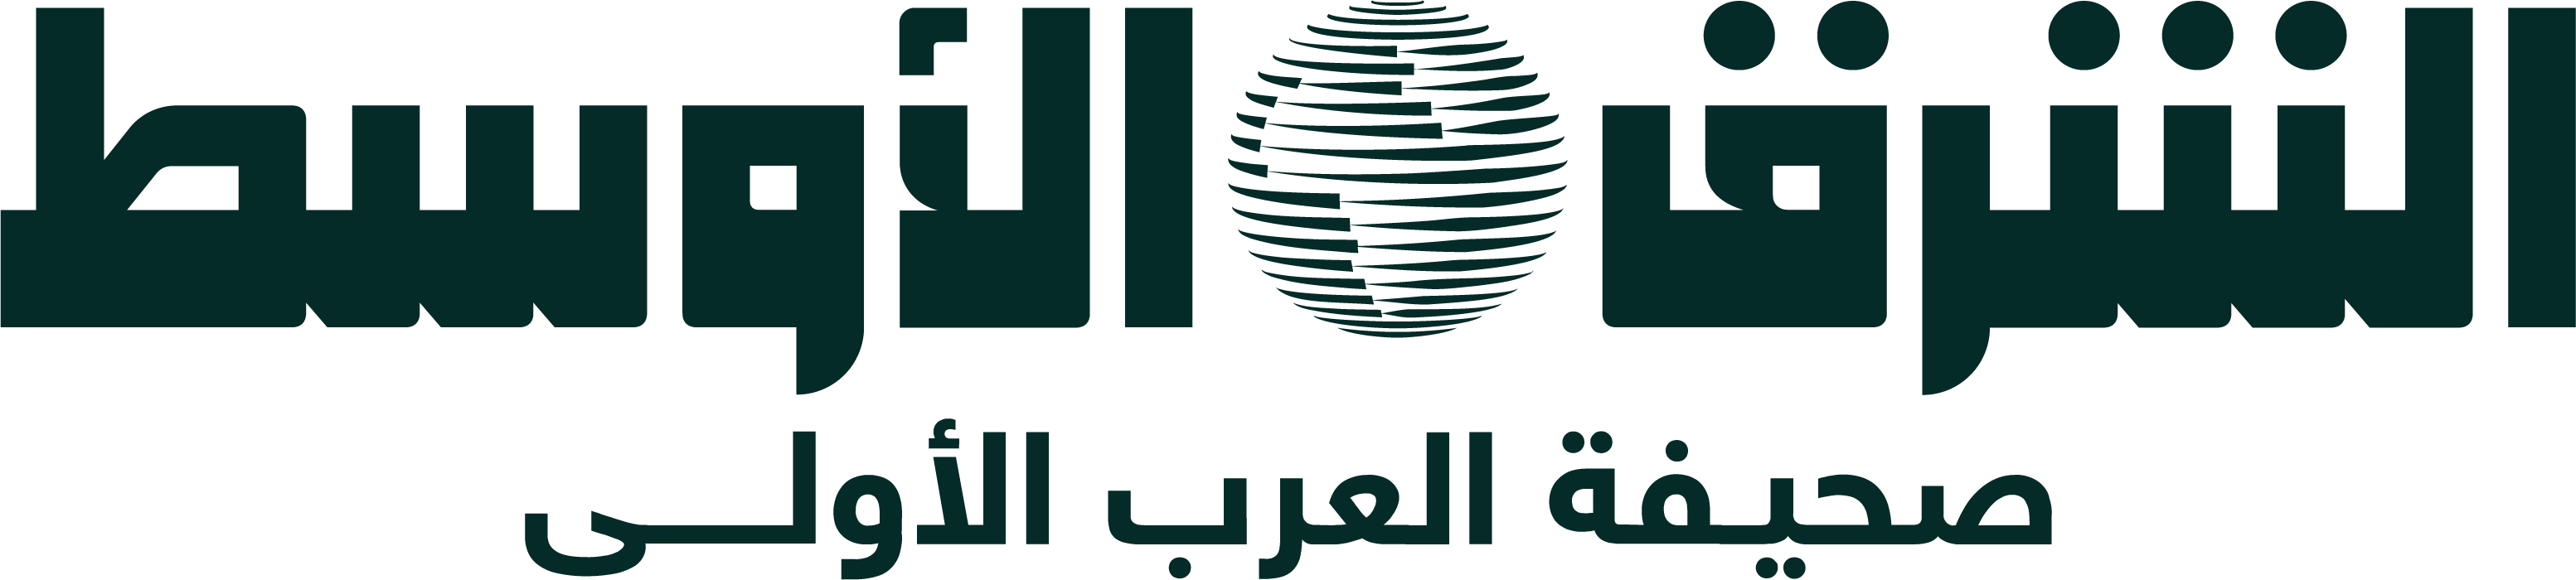 Al-Awasat Logo